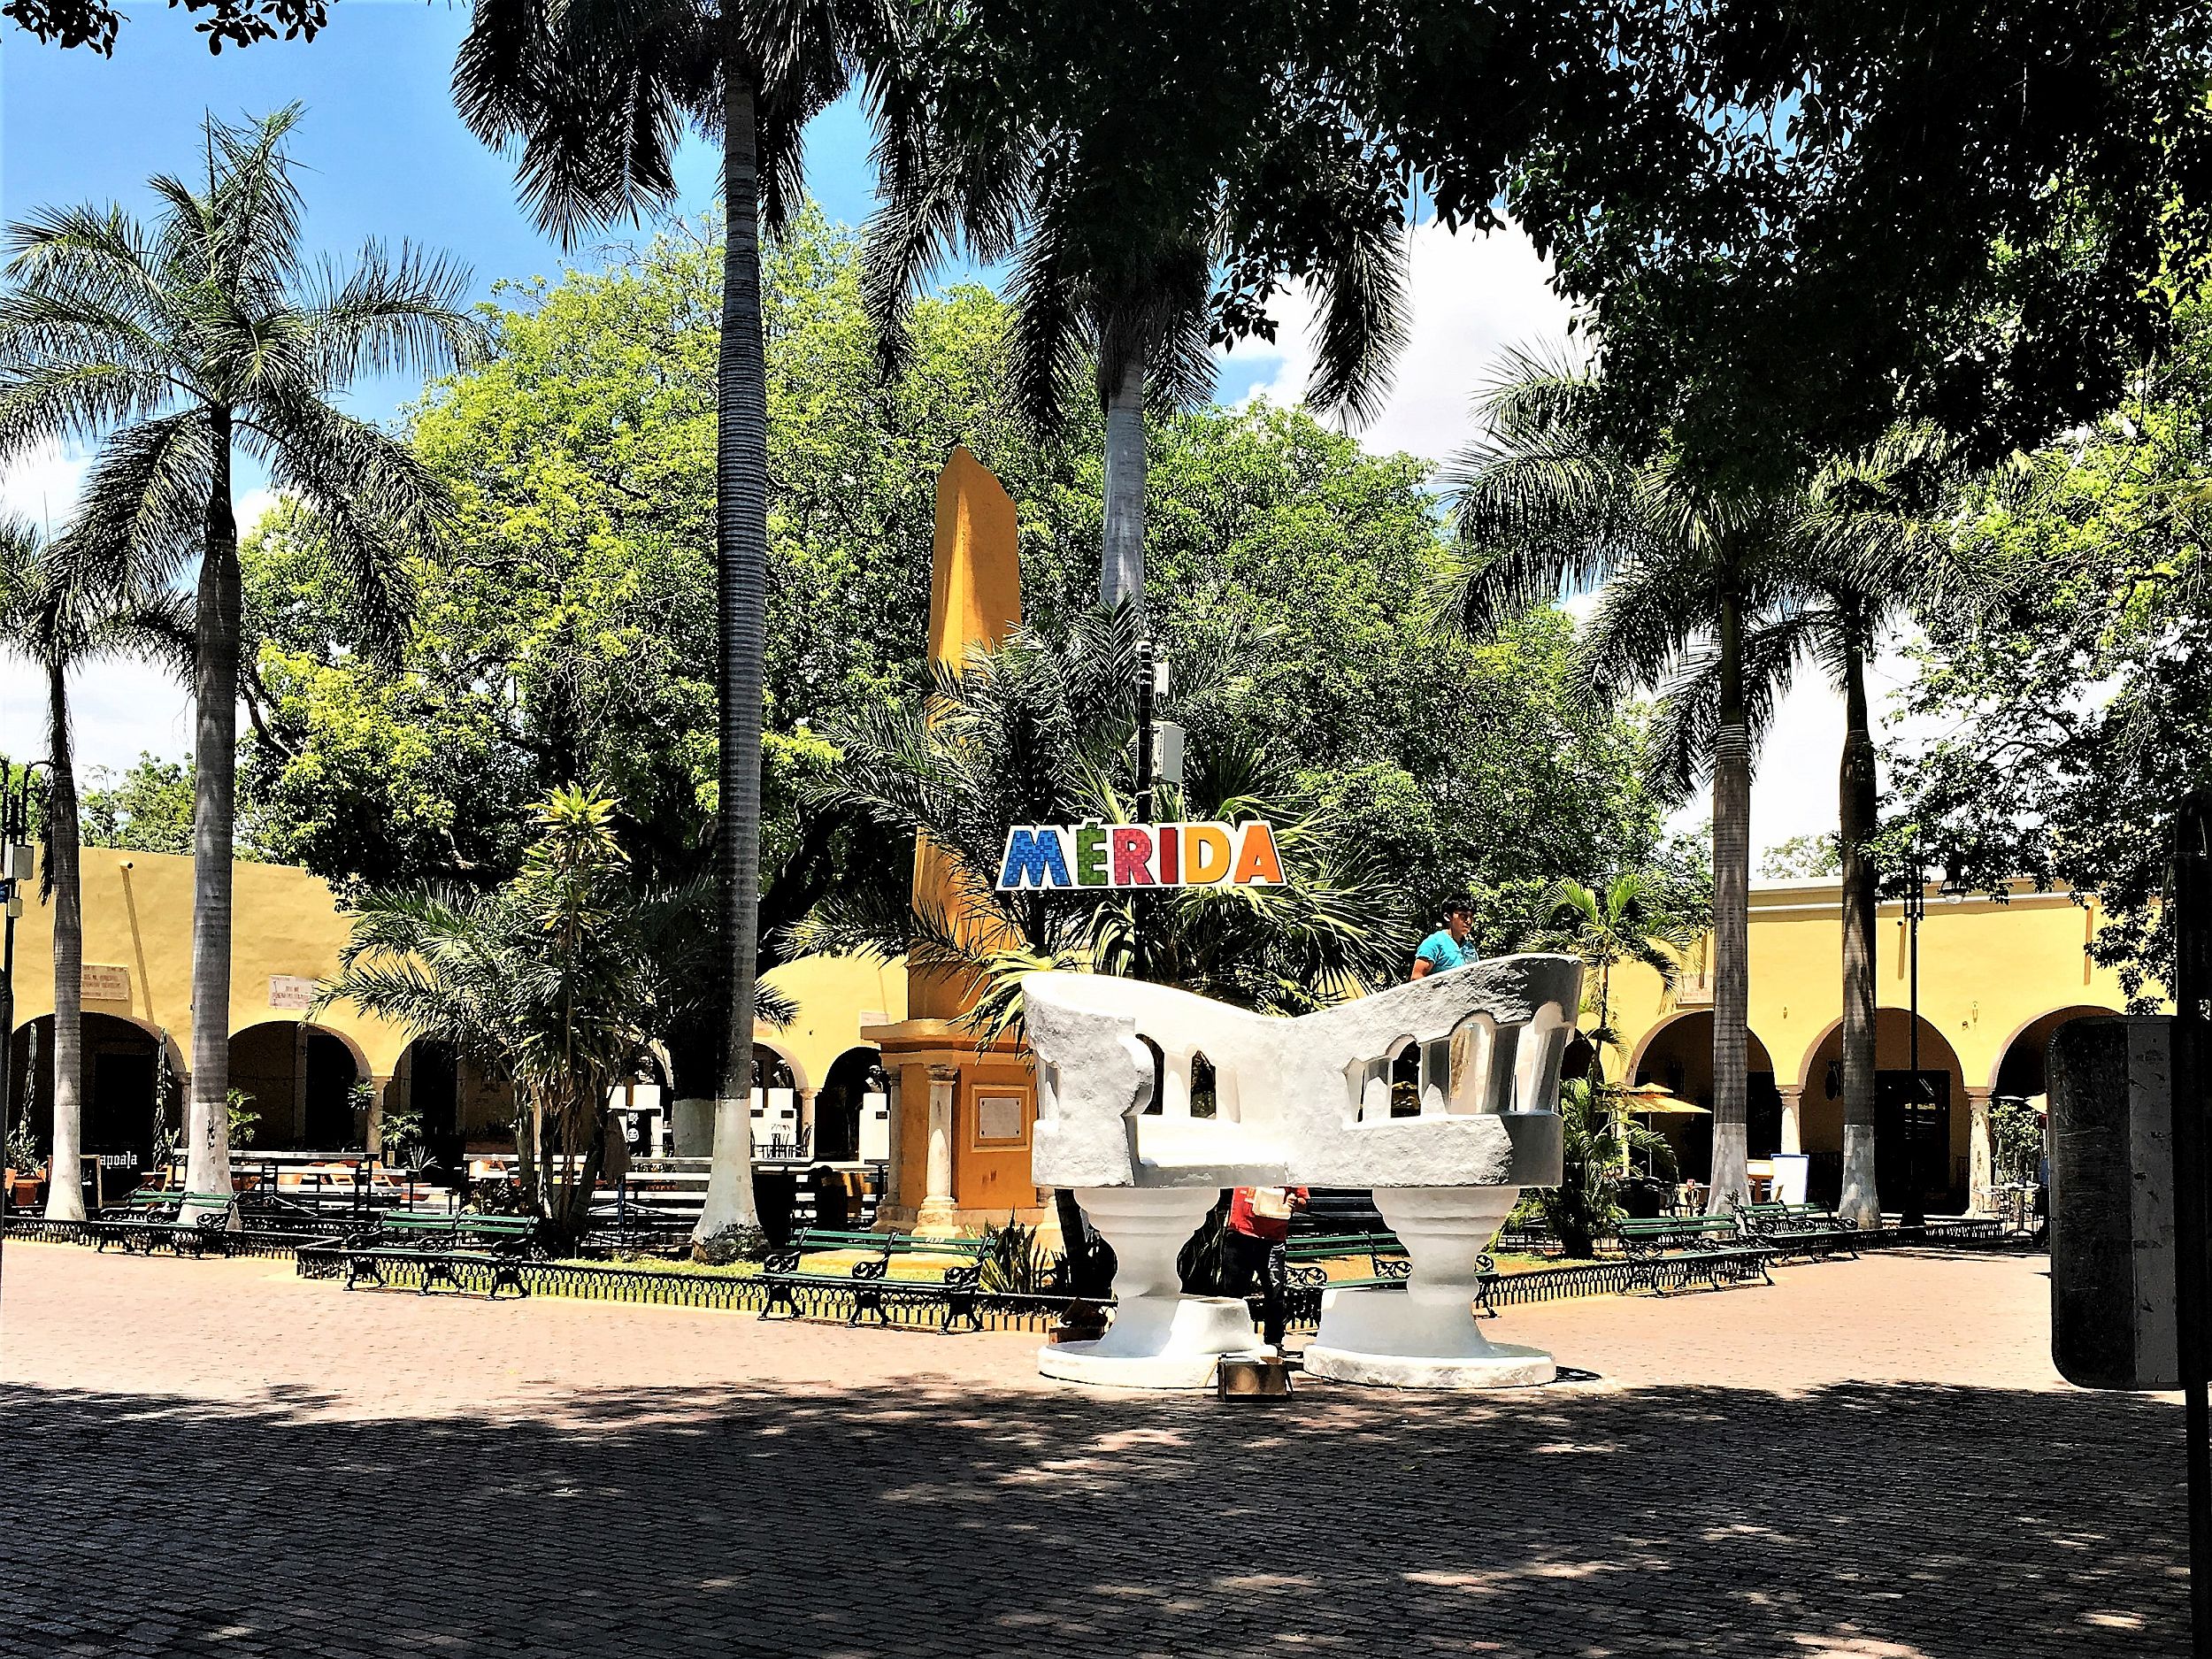 A park in Merida, Mexico